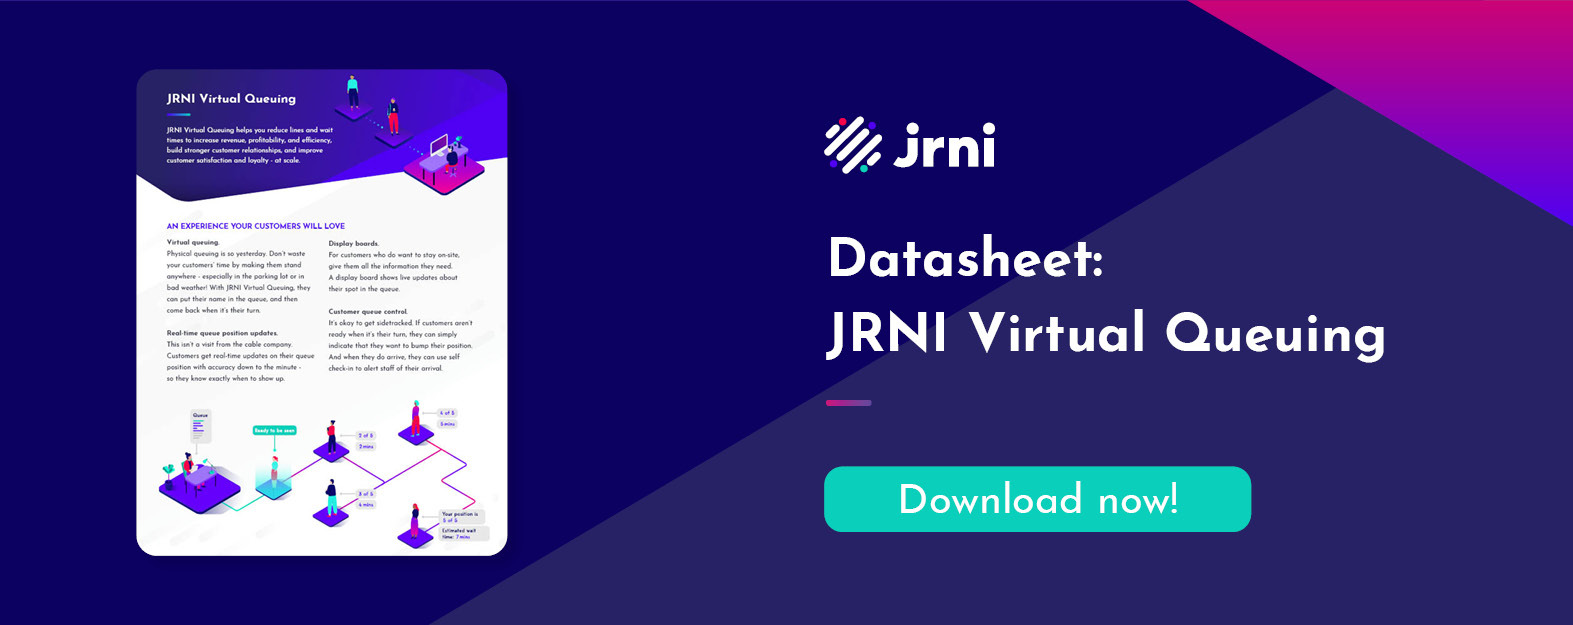 Datasheet: JRNI Virtual Queuing - download now!